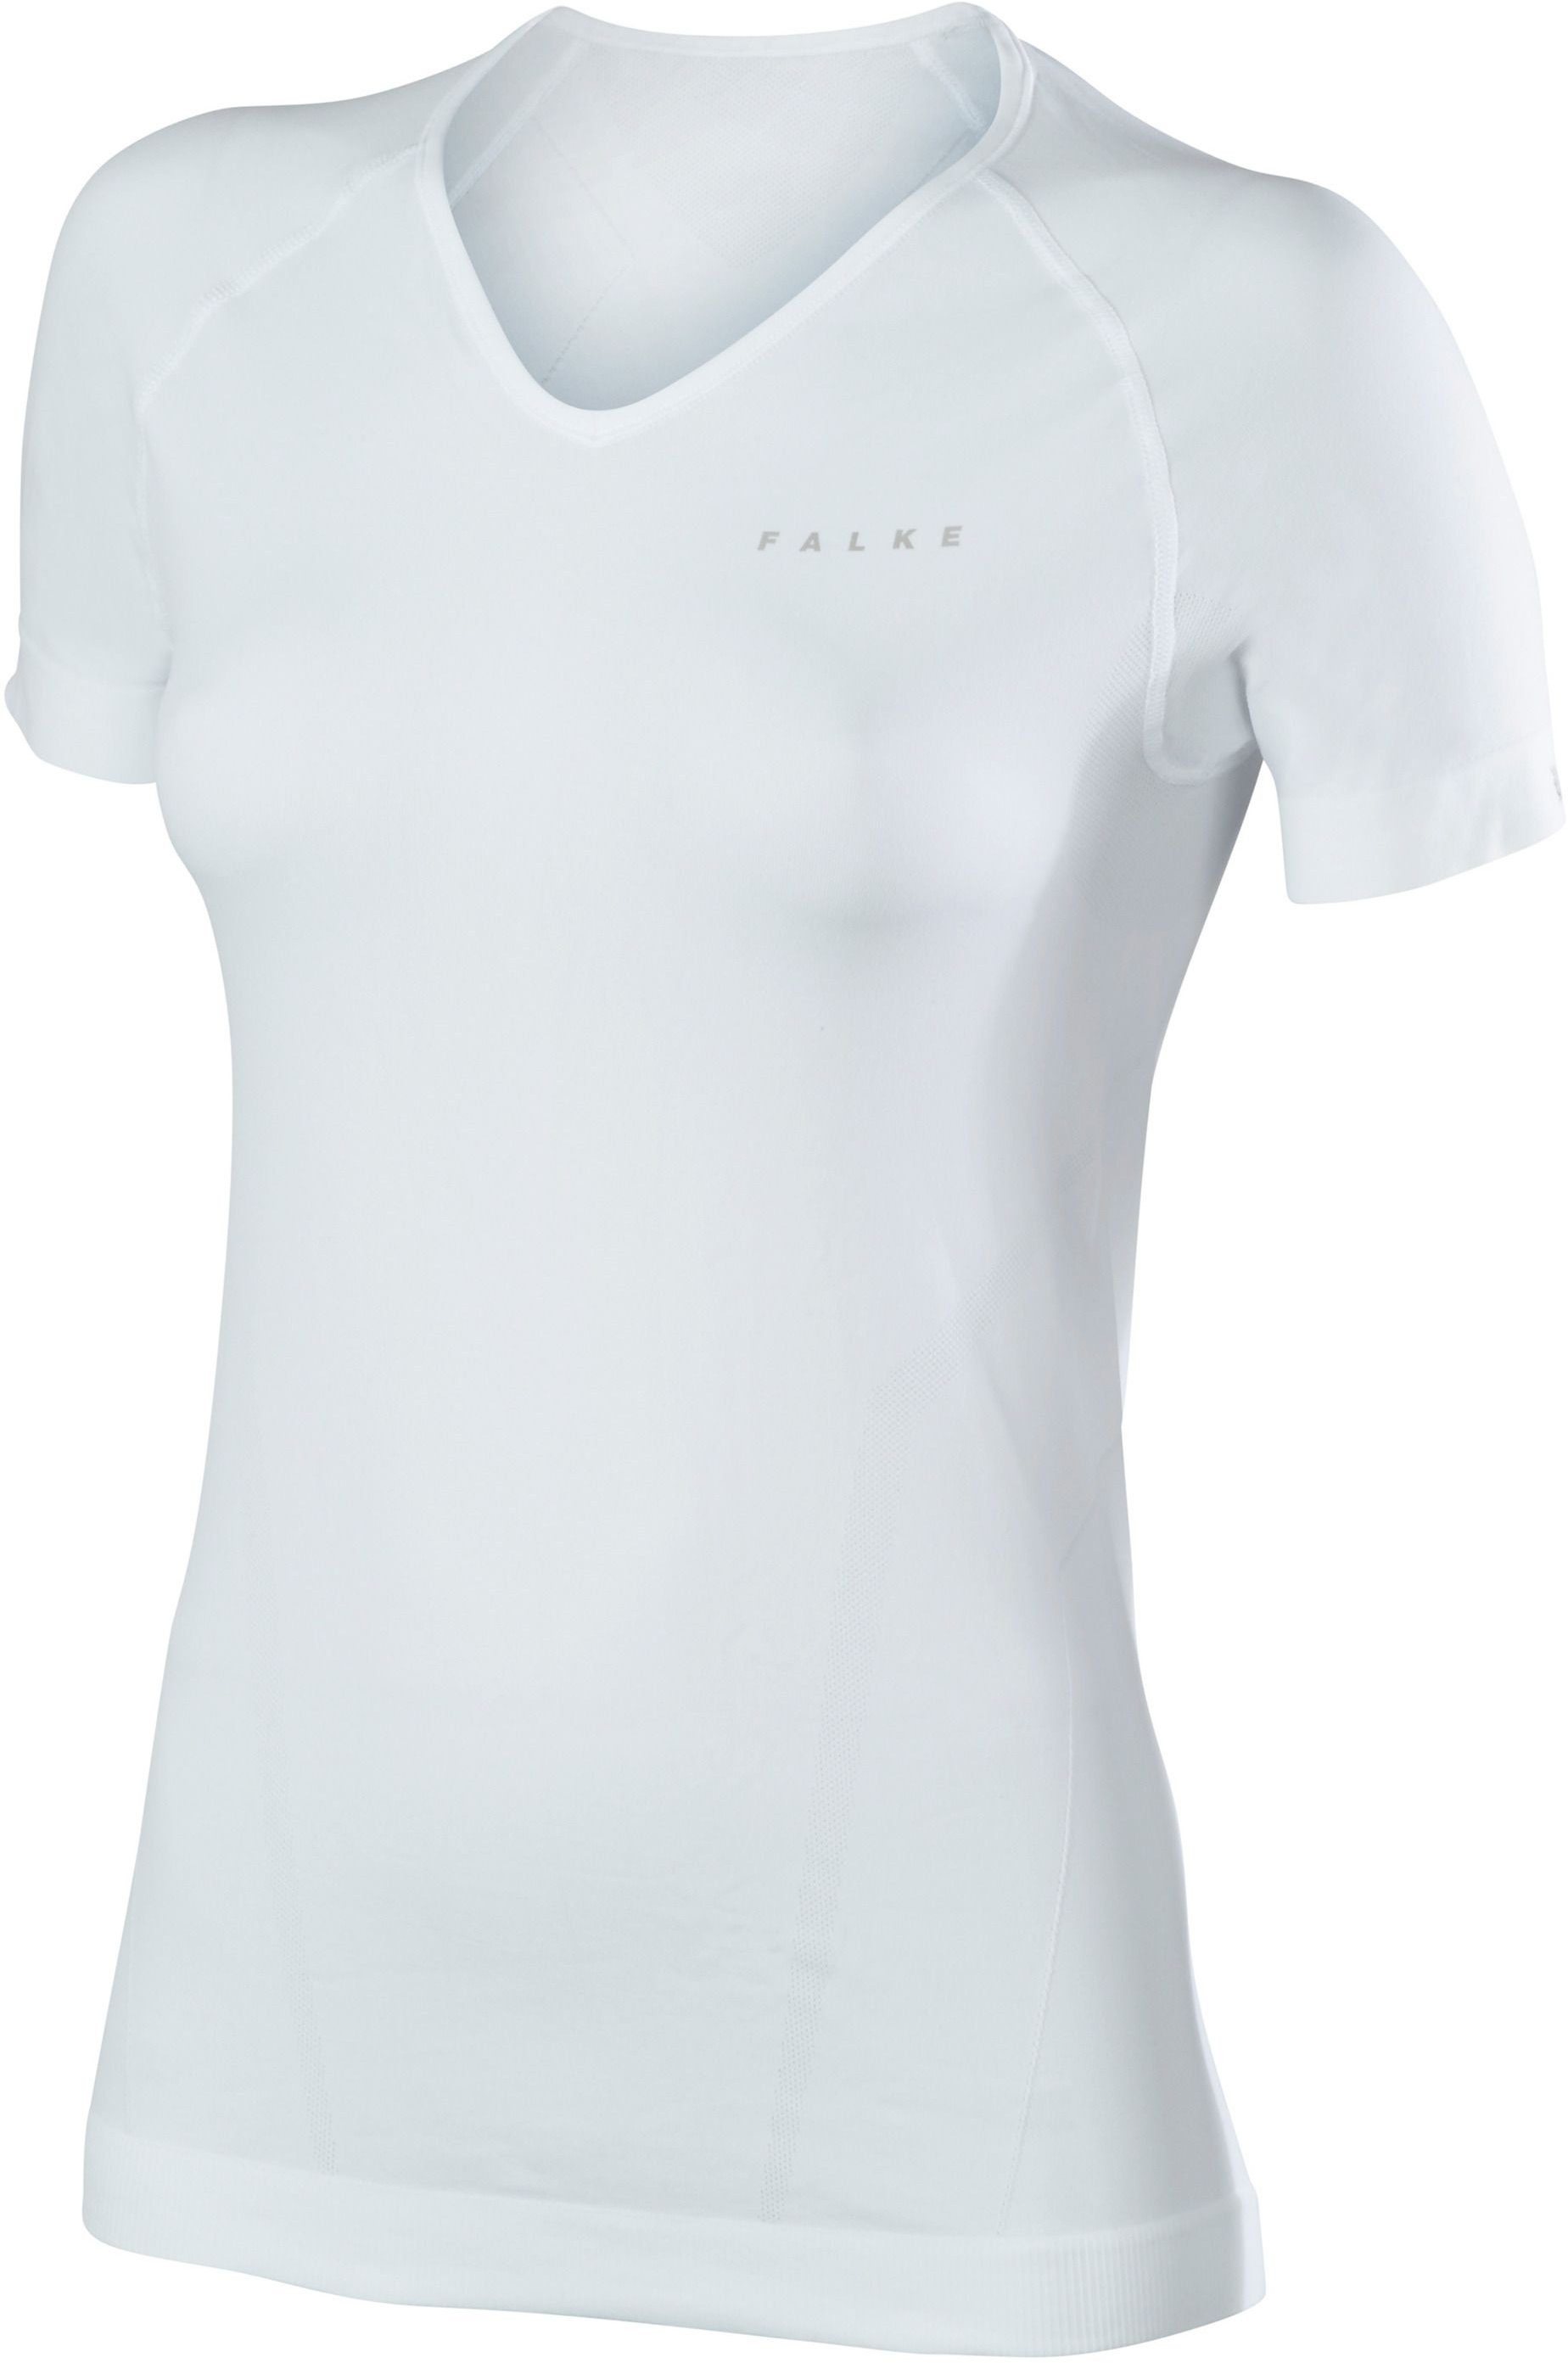 white Women Comfort Funktionsunterhemd FALKE Shirt Shortsleeved